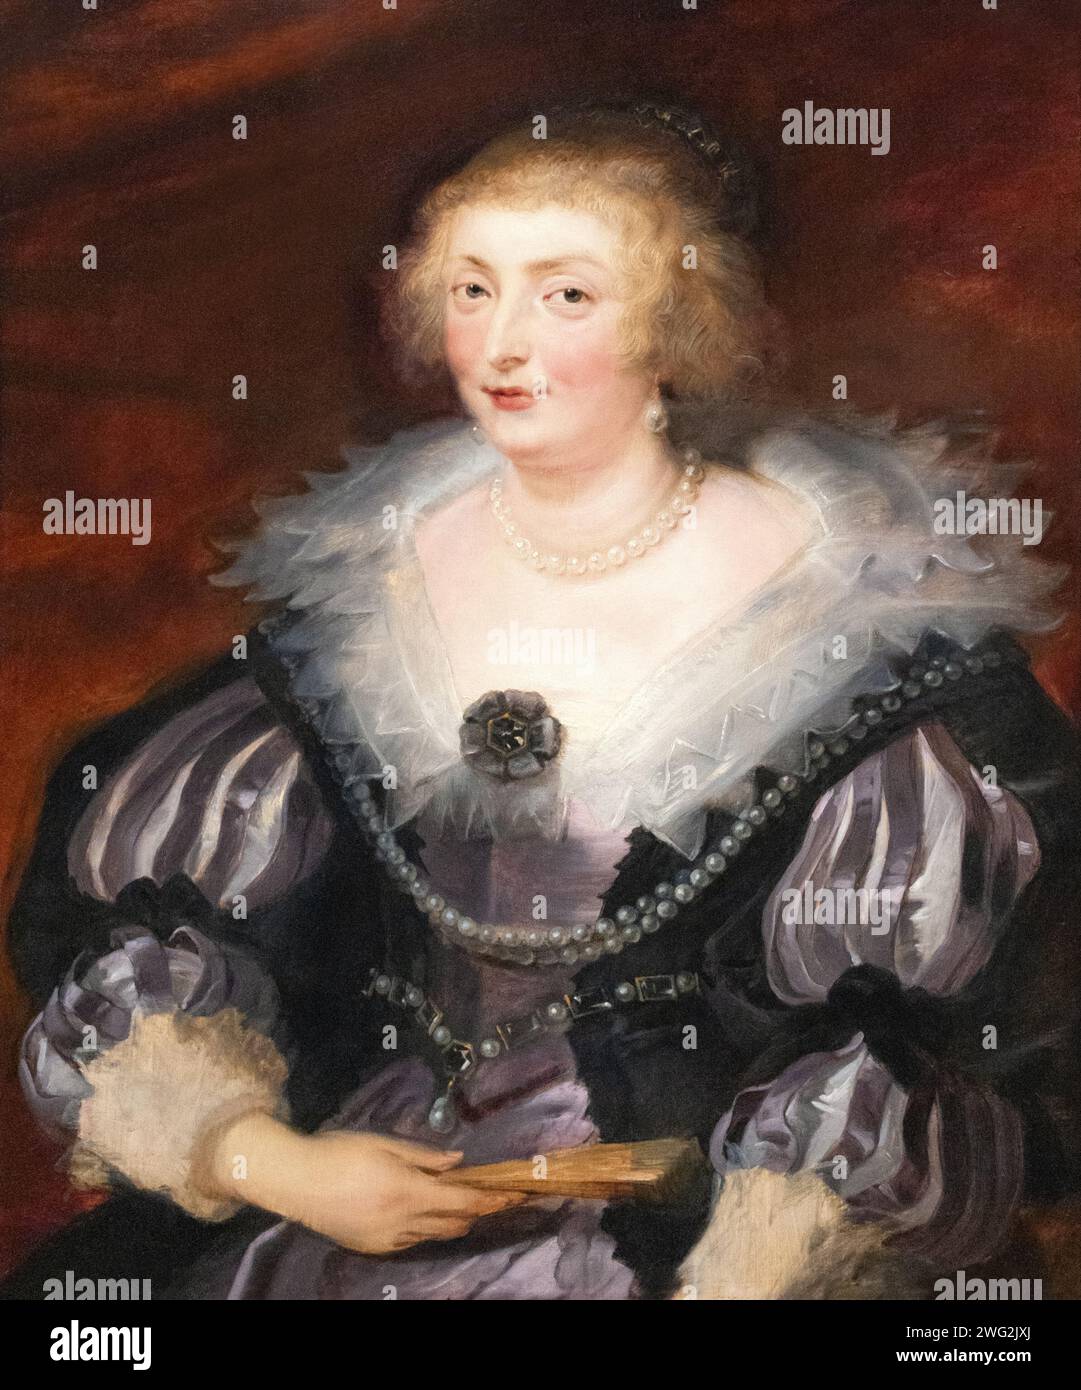 Sir Peter Paul Rubens peinture, 'Portrait d'une dame' 1625 ; portrait de Rubens, l'identité est inconnue. portrait d'une femme du xviie siècle. Style baroque Banque D'Images